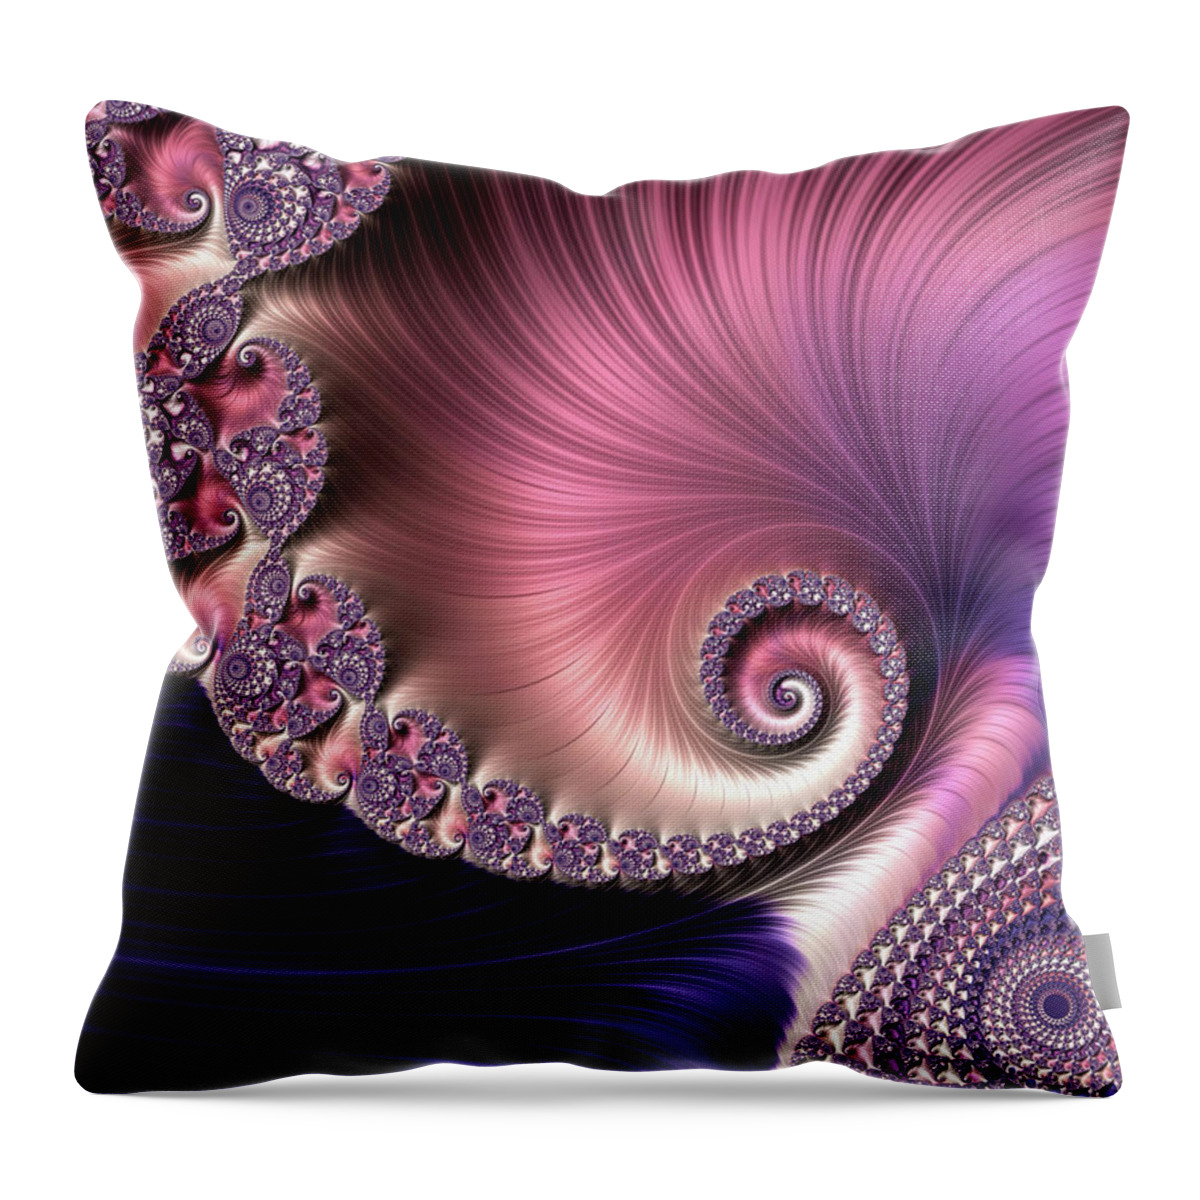 Fractal Throw Pillow featuring the digital art Silk by Susan Maxwell Schmidt